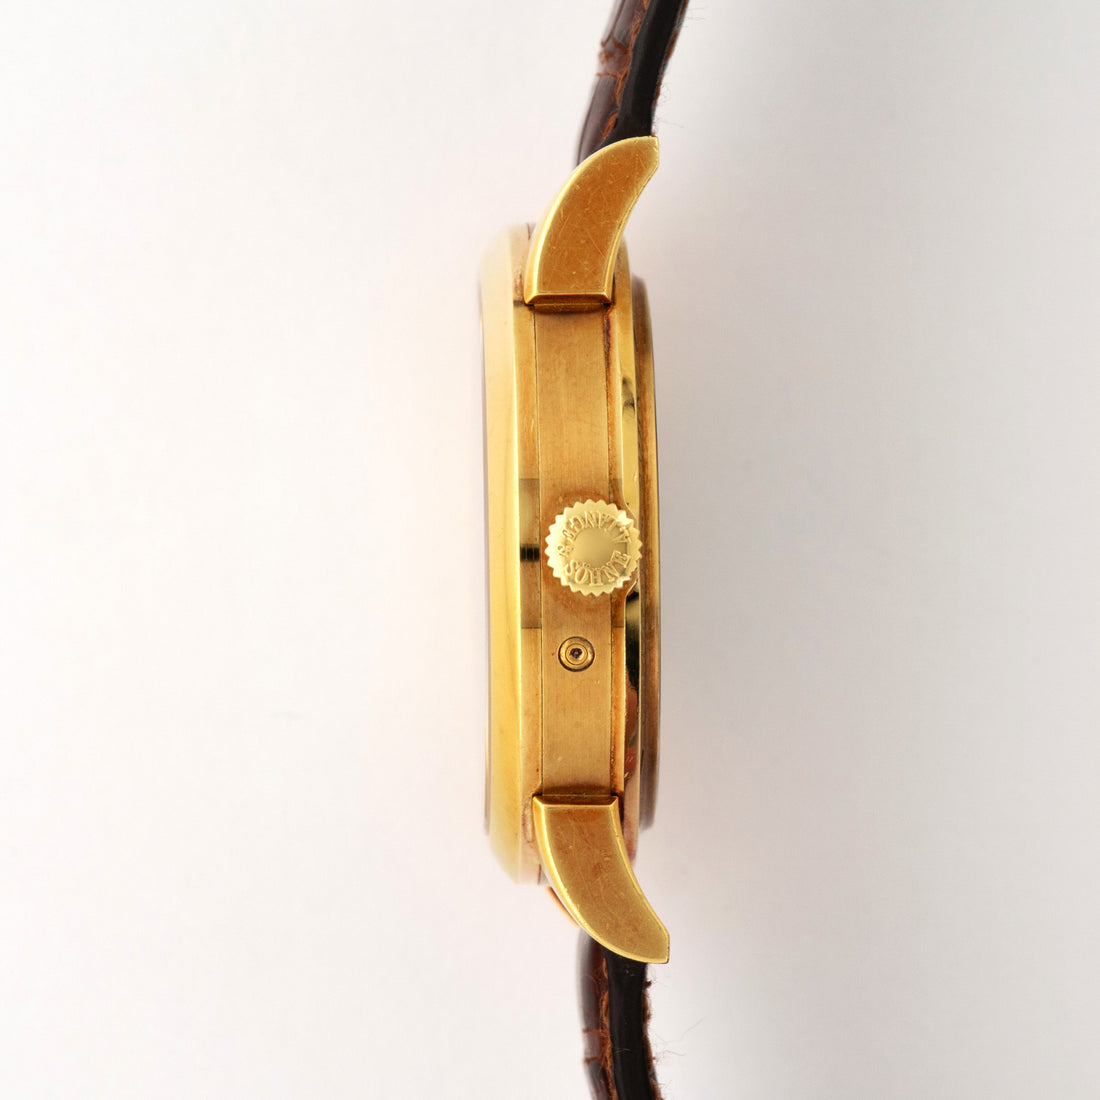 A. Lange & Sohne Yellow Gold Langematik Perpetual Watch Ref. 310.021